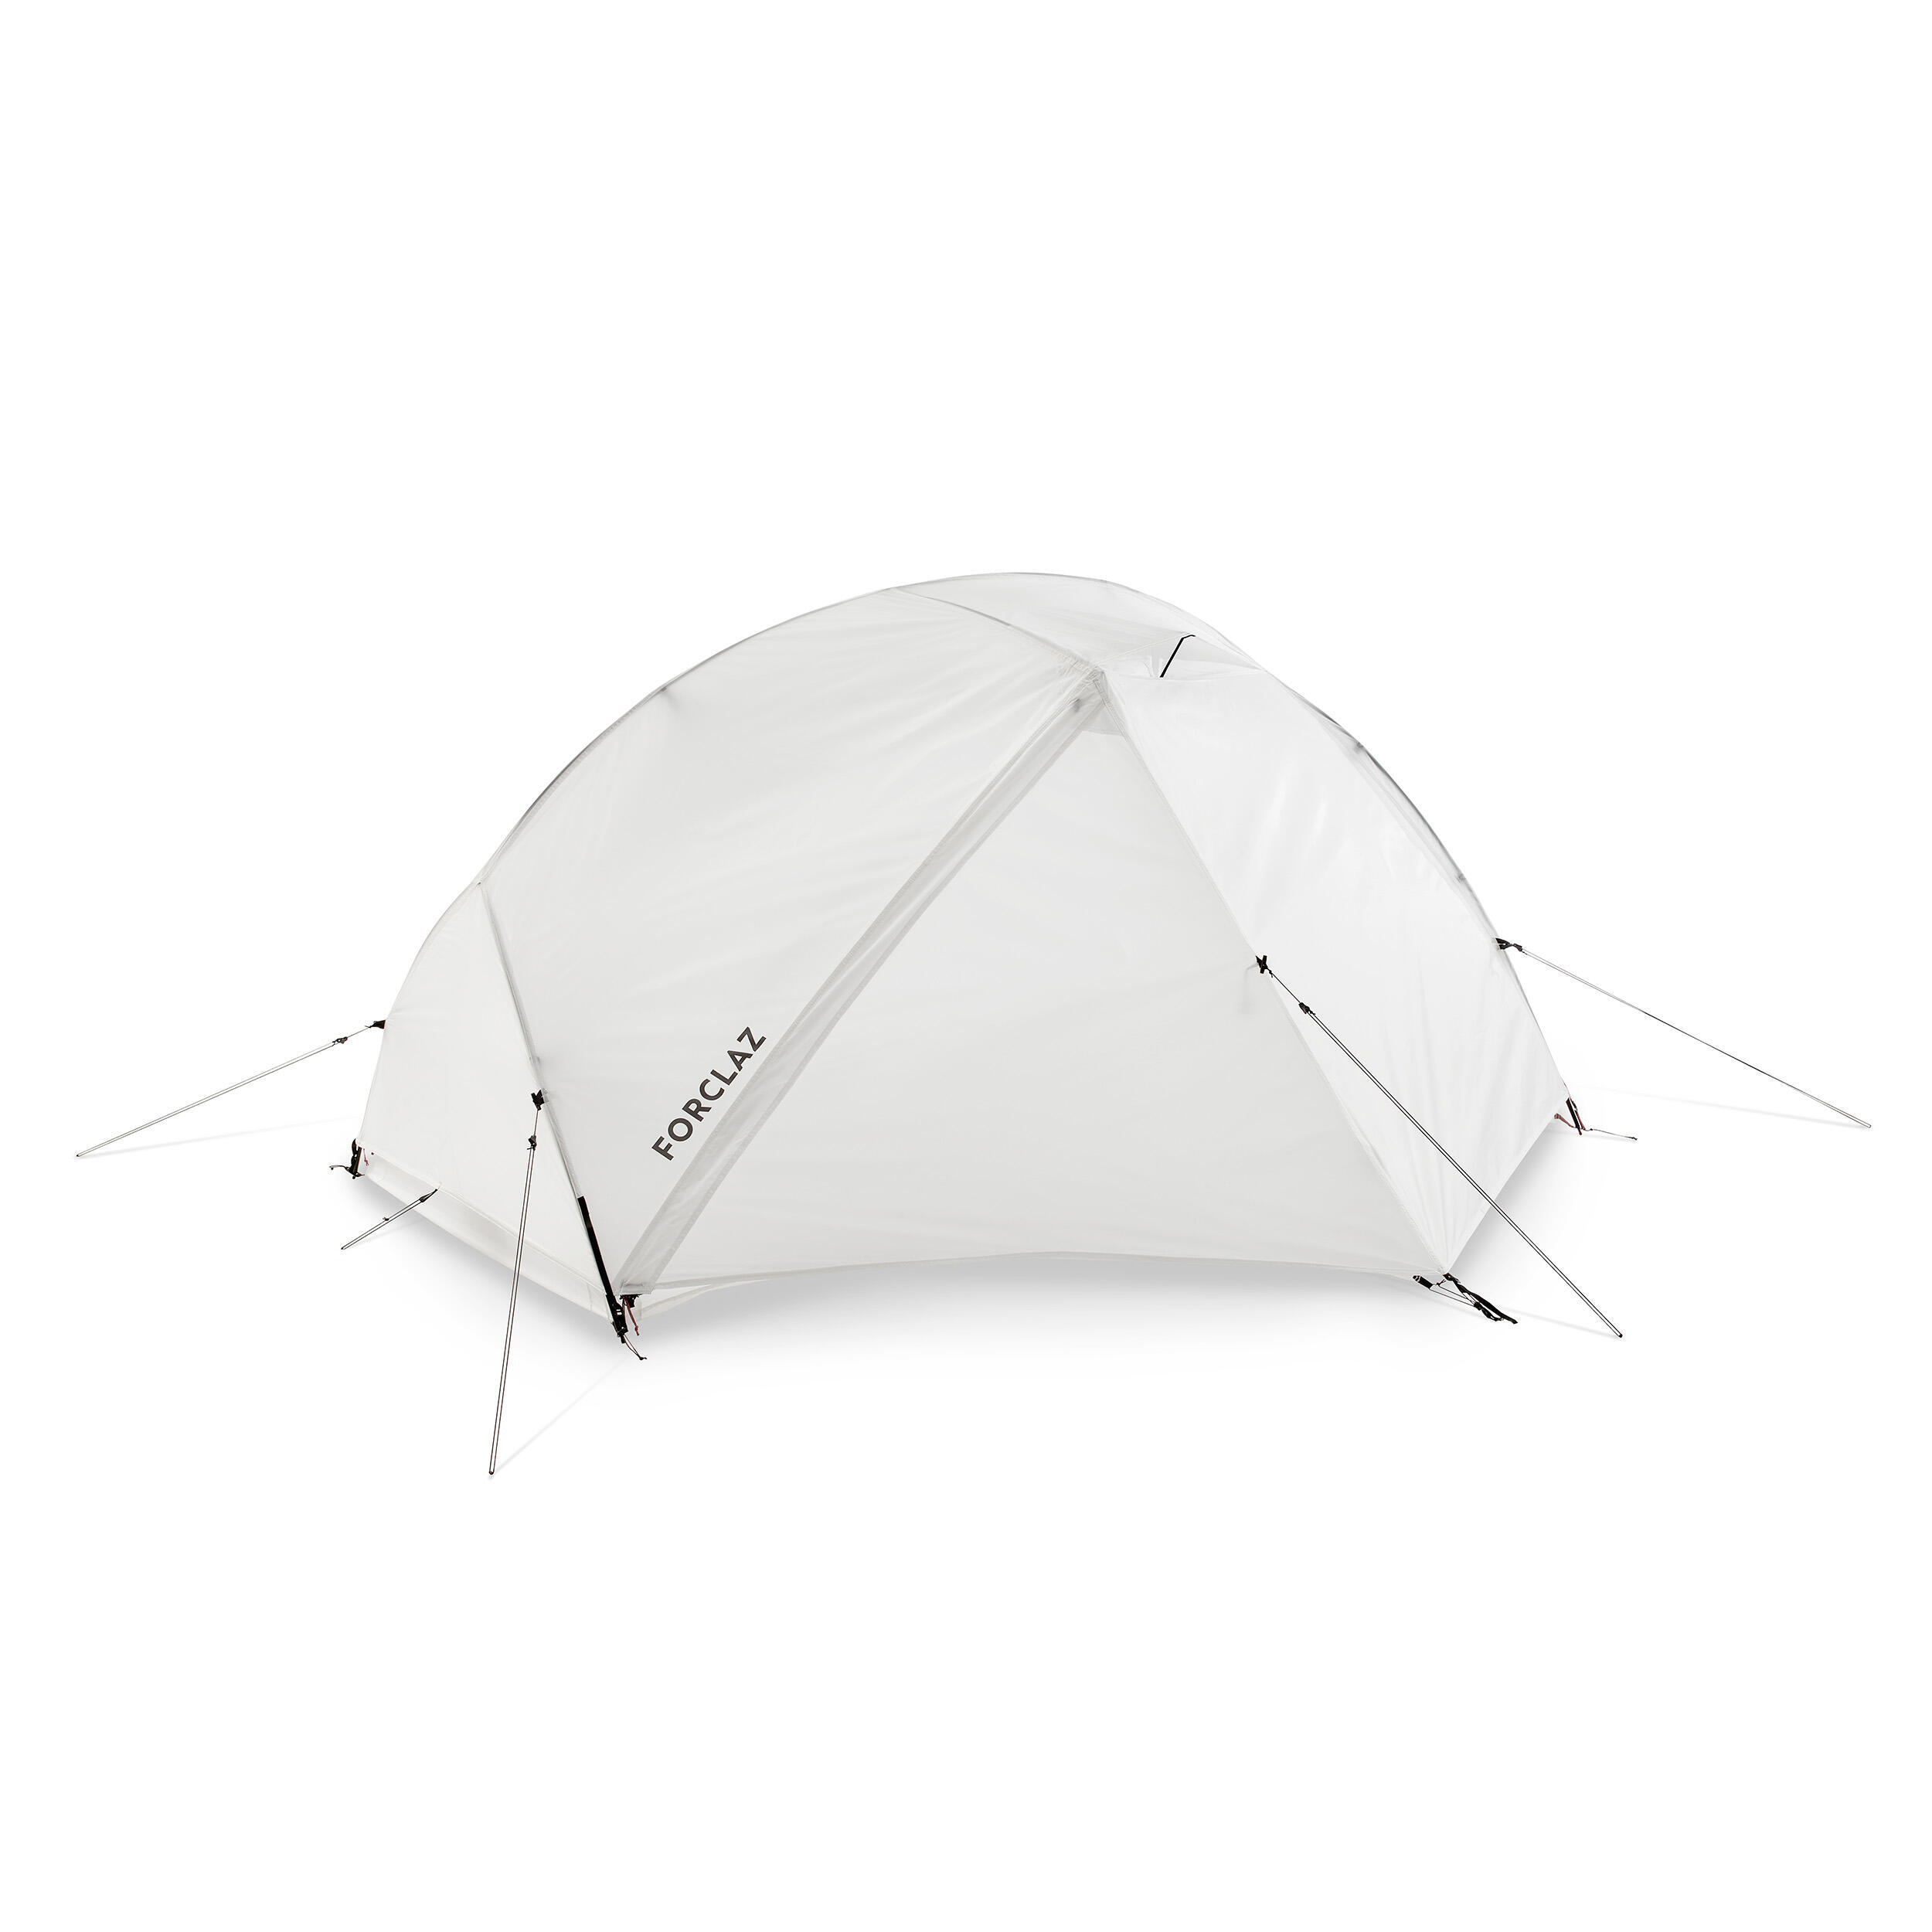 Палатка купольная трекинговая 2х-местная Forclaz Minimal Edition MT900, белый палатка naturehike cloud up si 2х местная green nh17t001 t dfgr